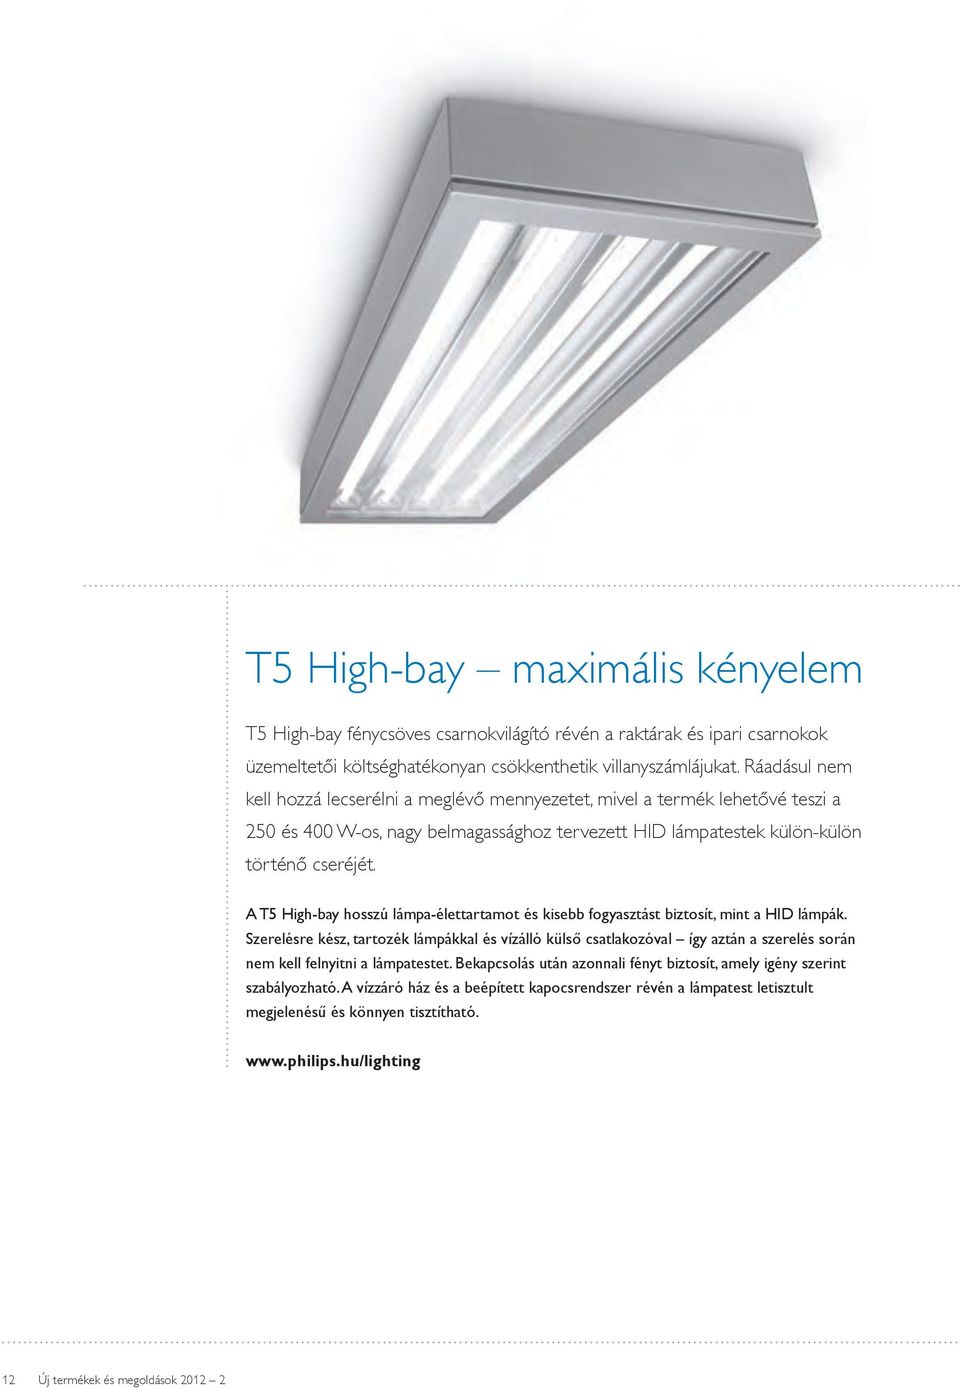 A T5 High-bay hosszú lámpa-élettartamot és kisebb fogyasztást biztosít, mint a HID lámpák.